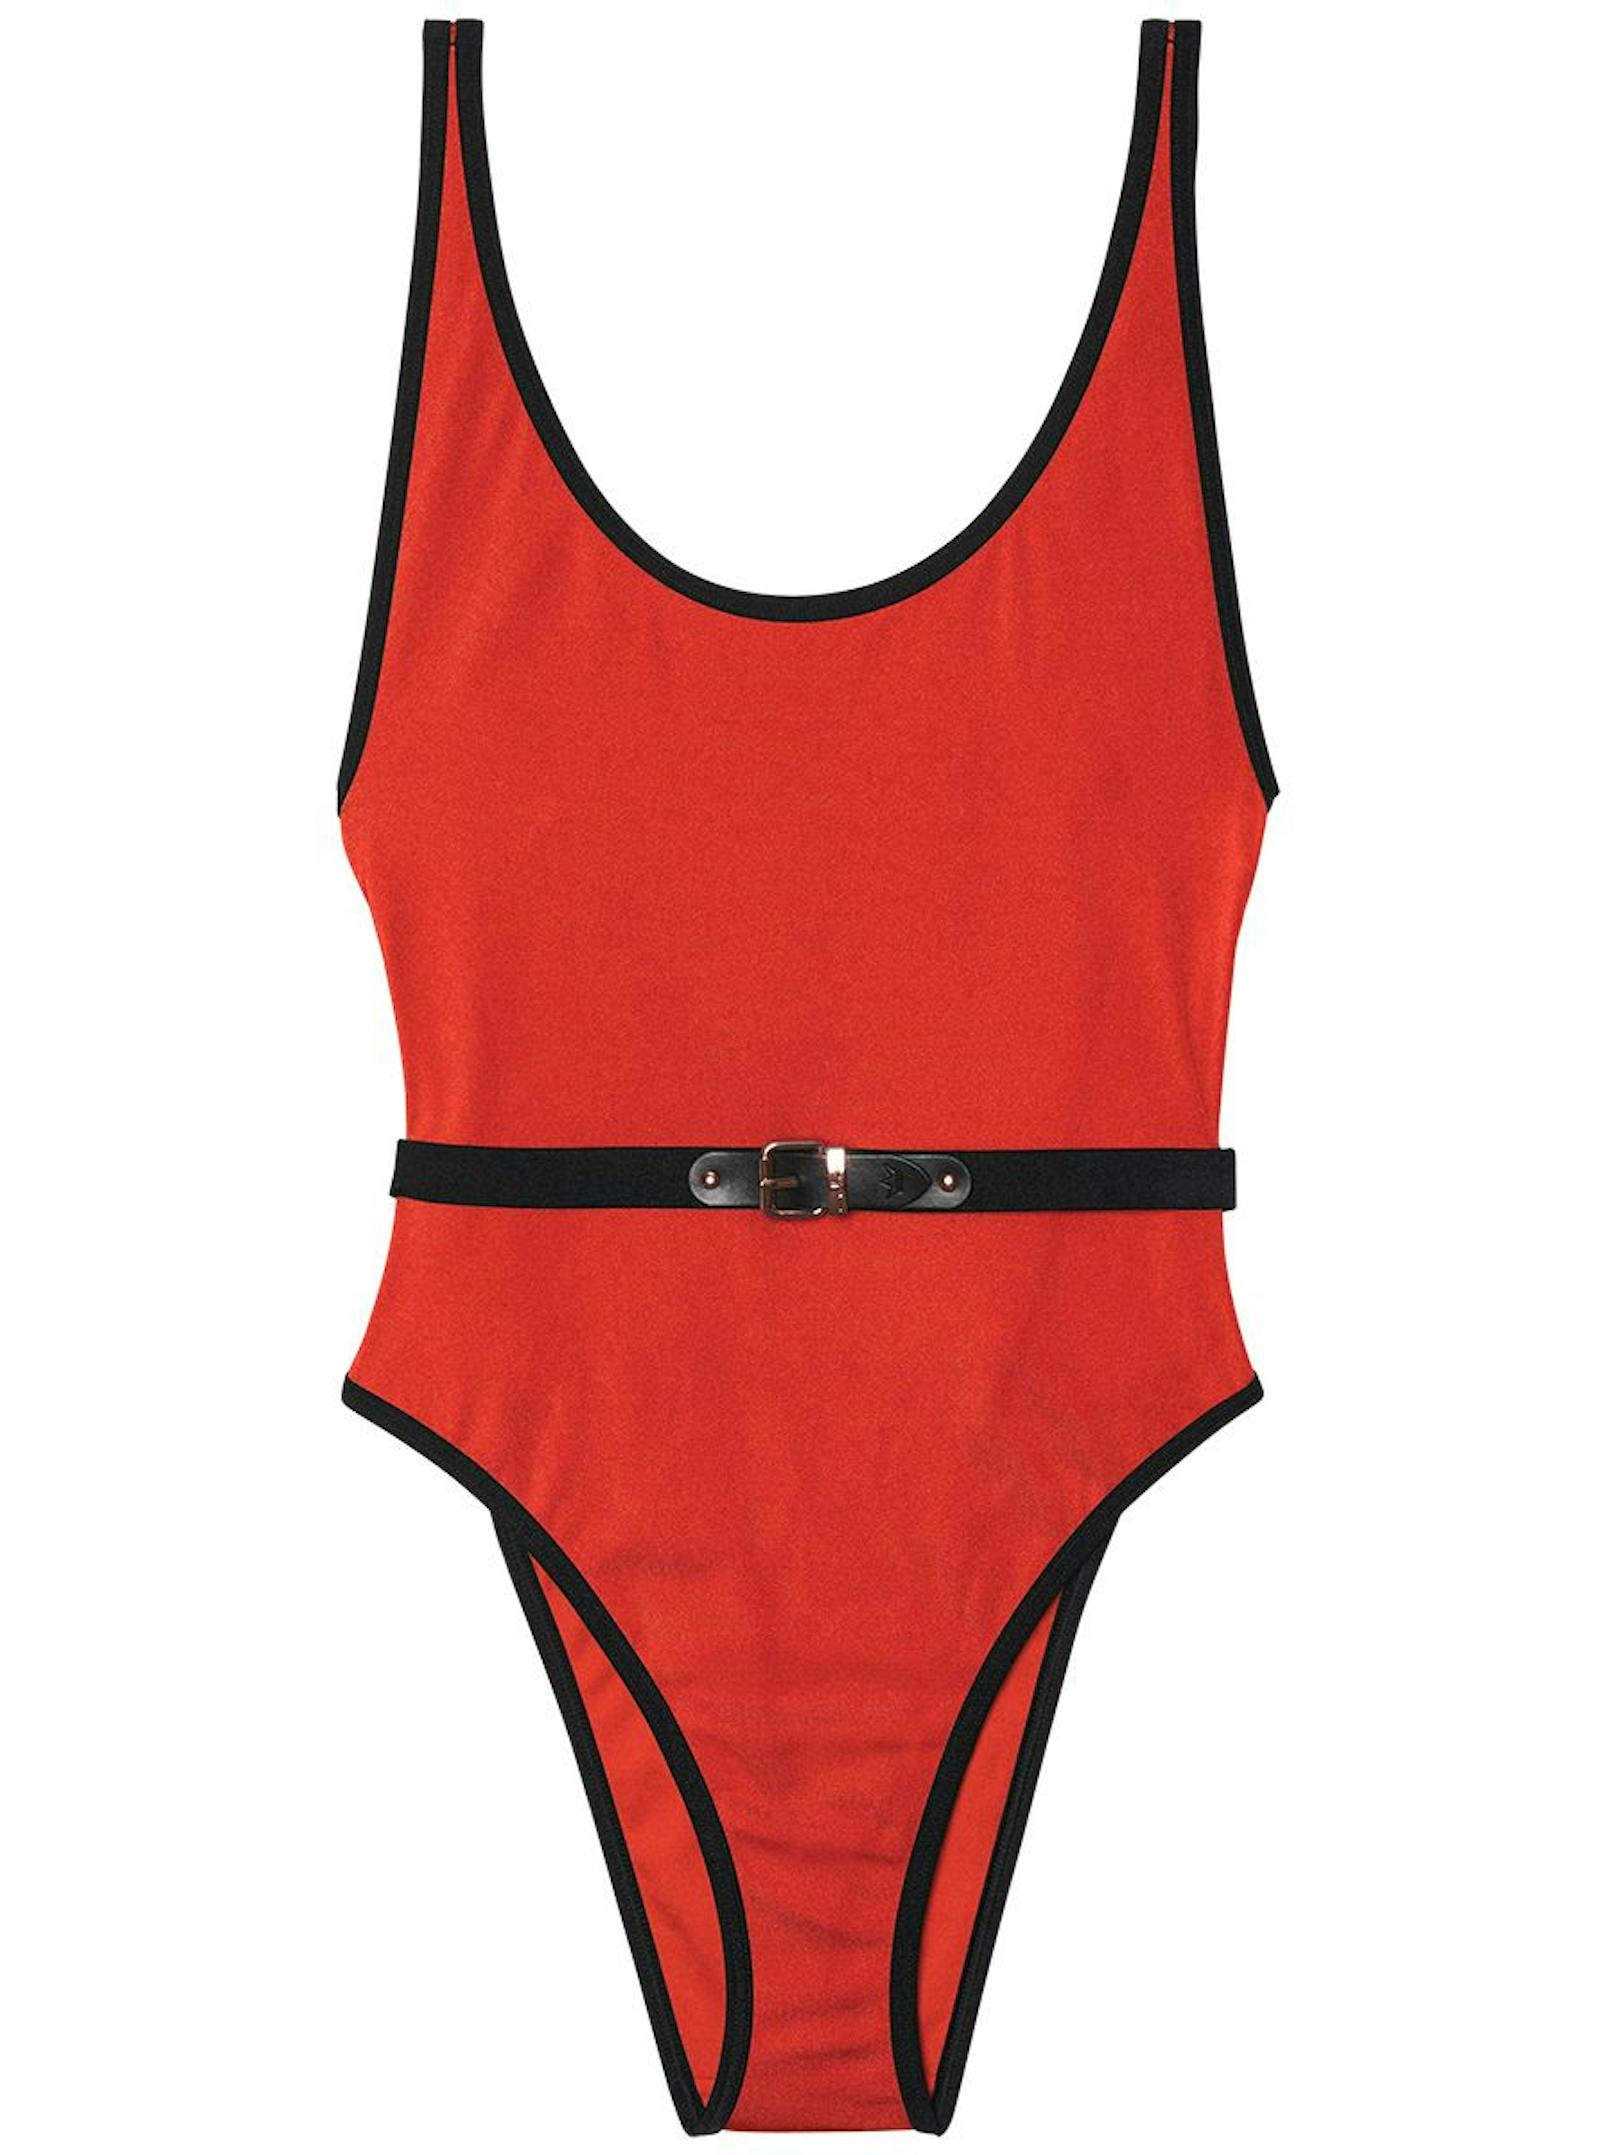 "Buckle Beach"-Badeanzug in Rot um 89 Euro.